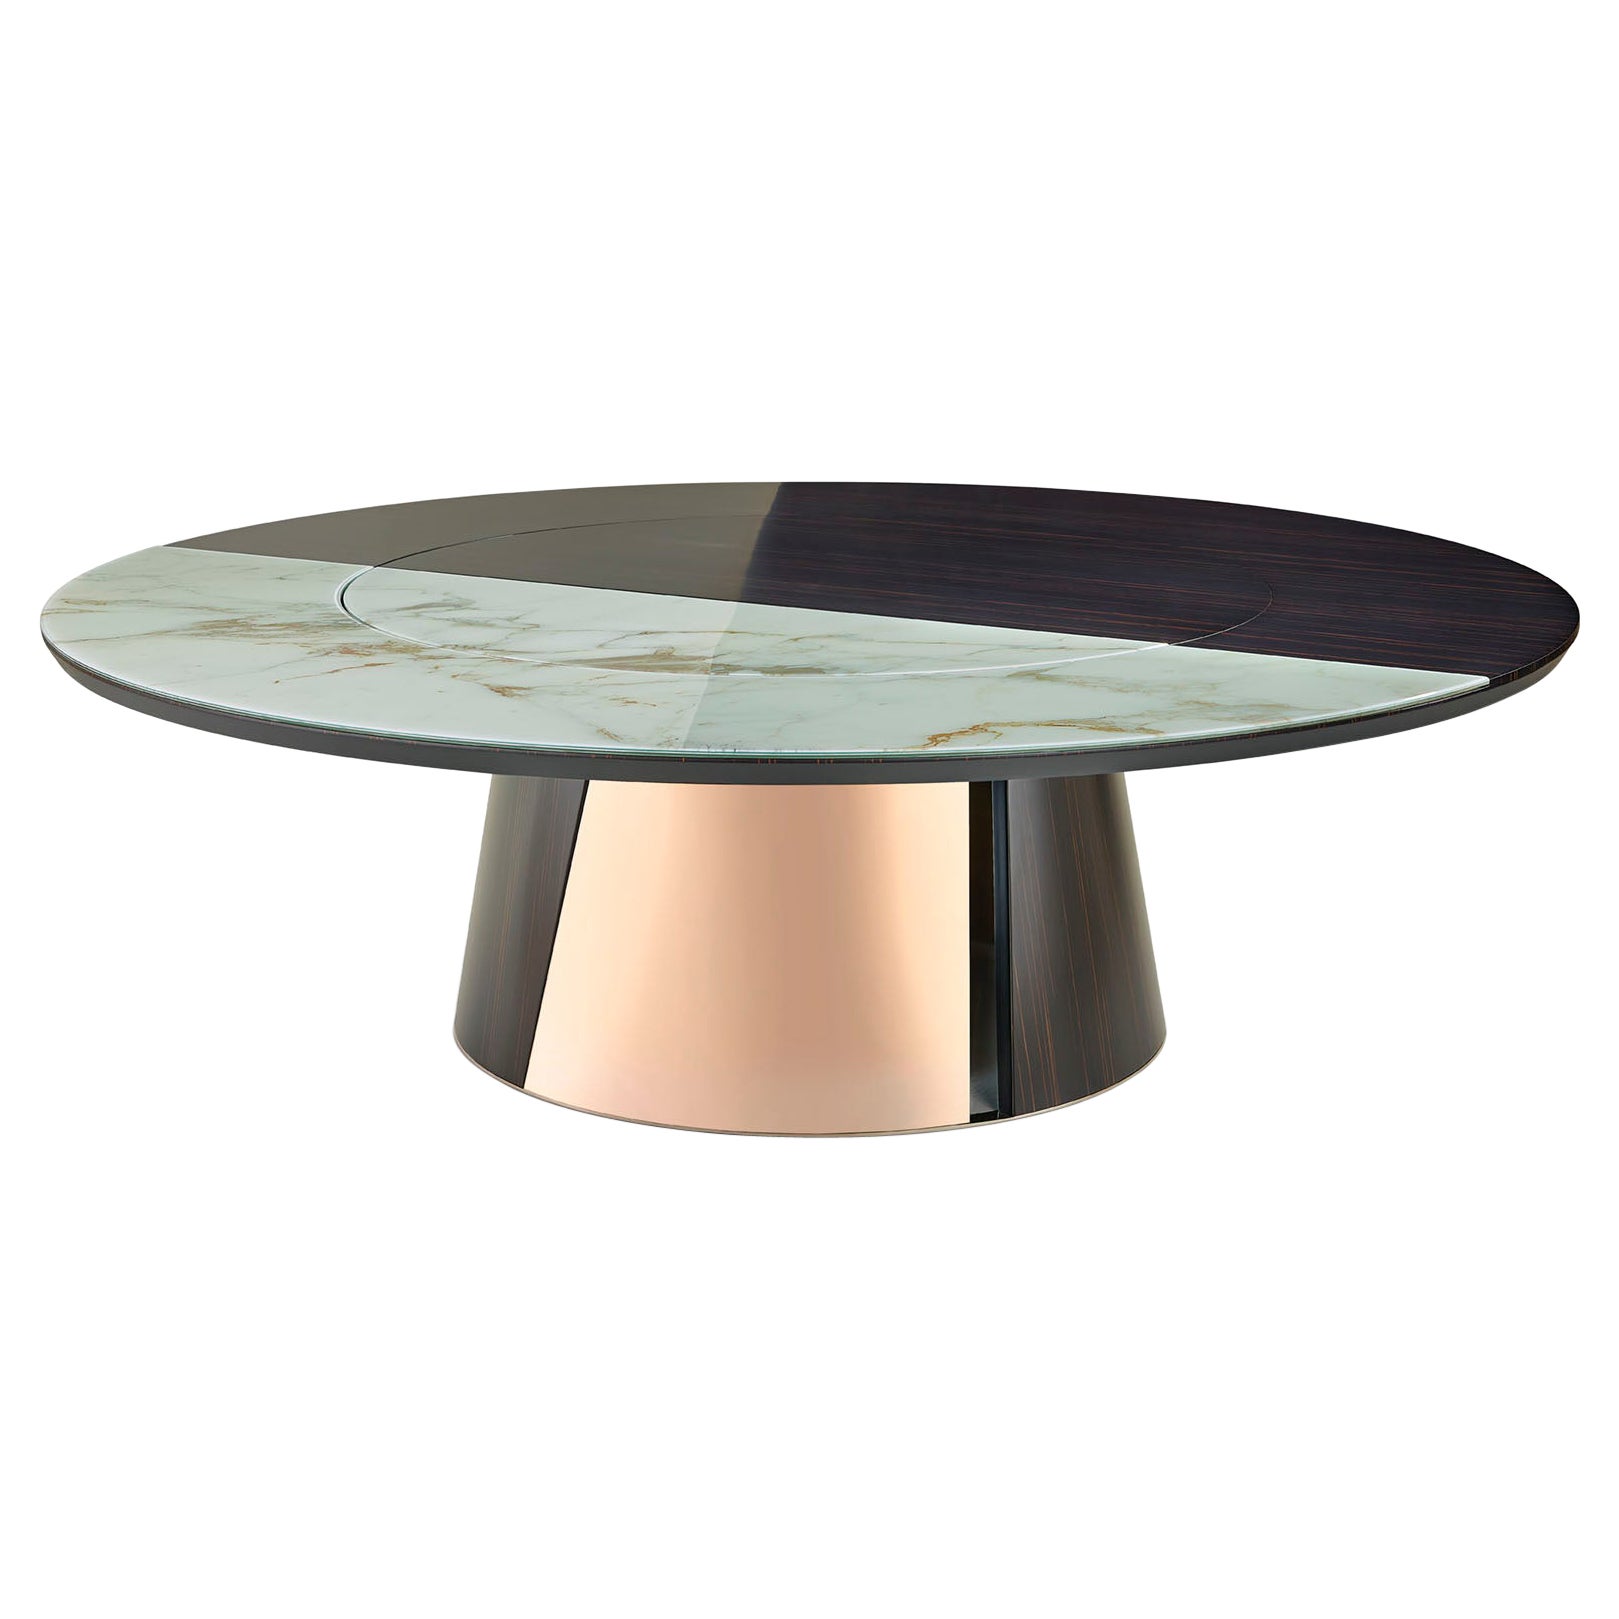 Runder Tisch mit Metallrahmen und Beinen aus glänzendem oder satiniertem Ebenholz oder Eiche, anpassbar